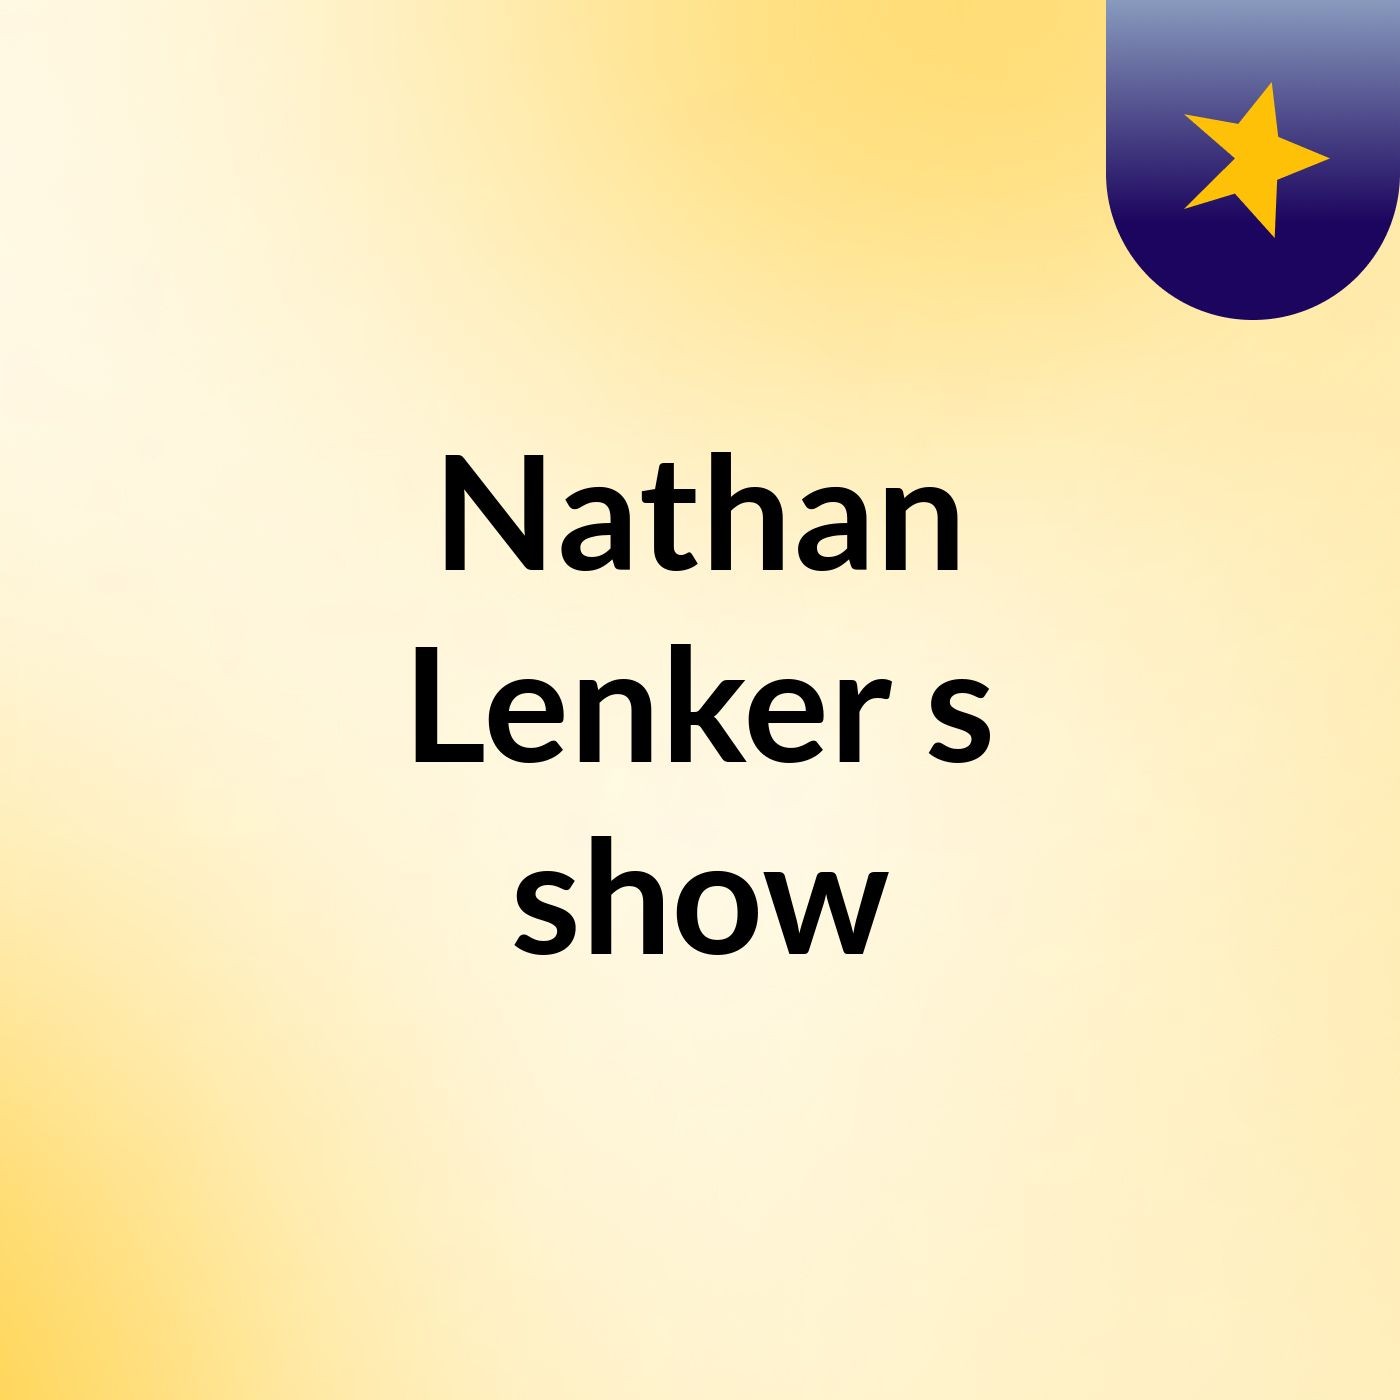 Nathan Lenker's show